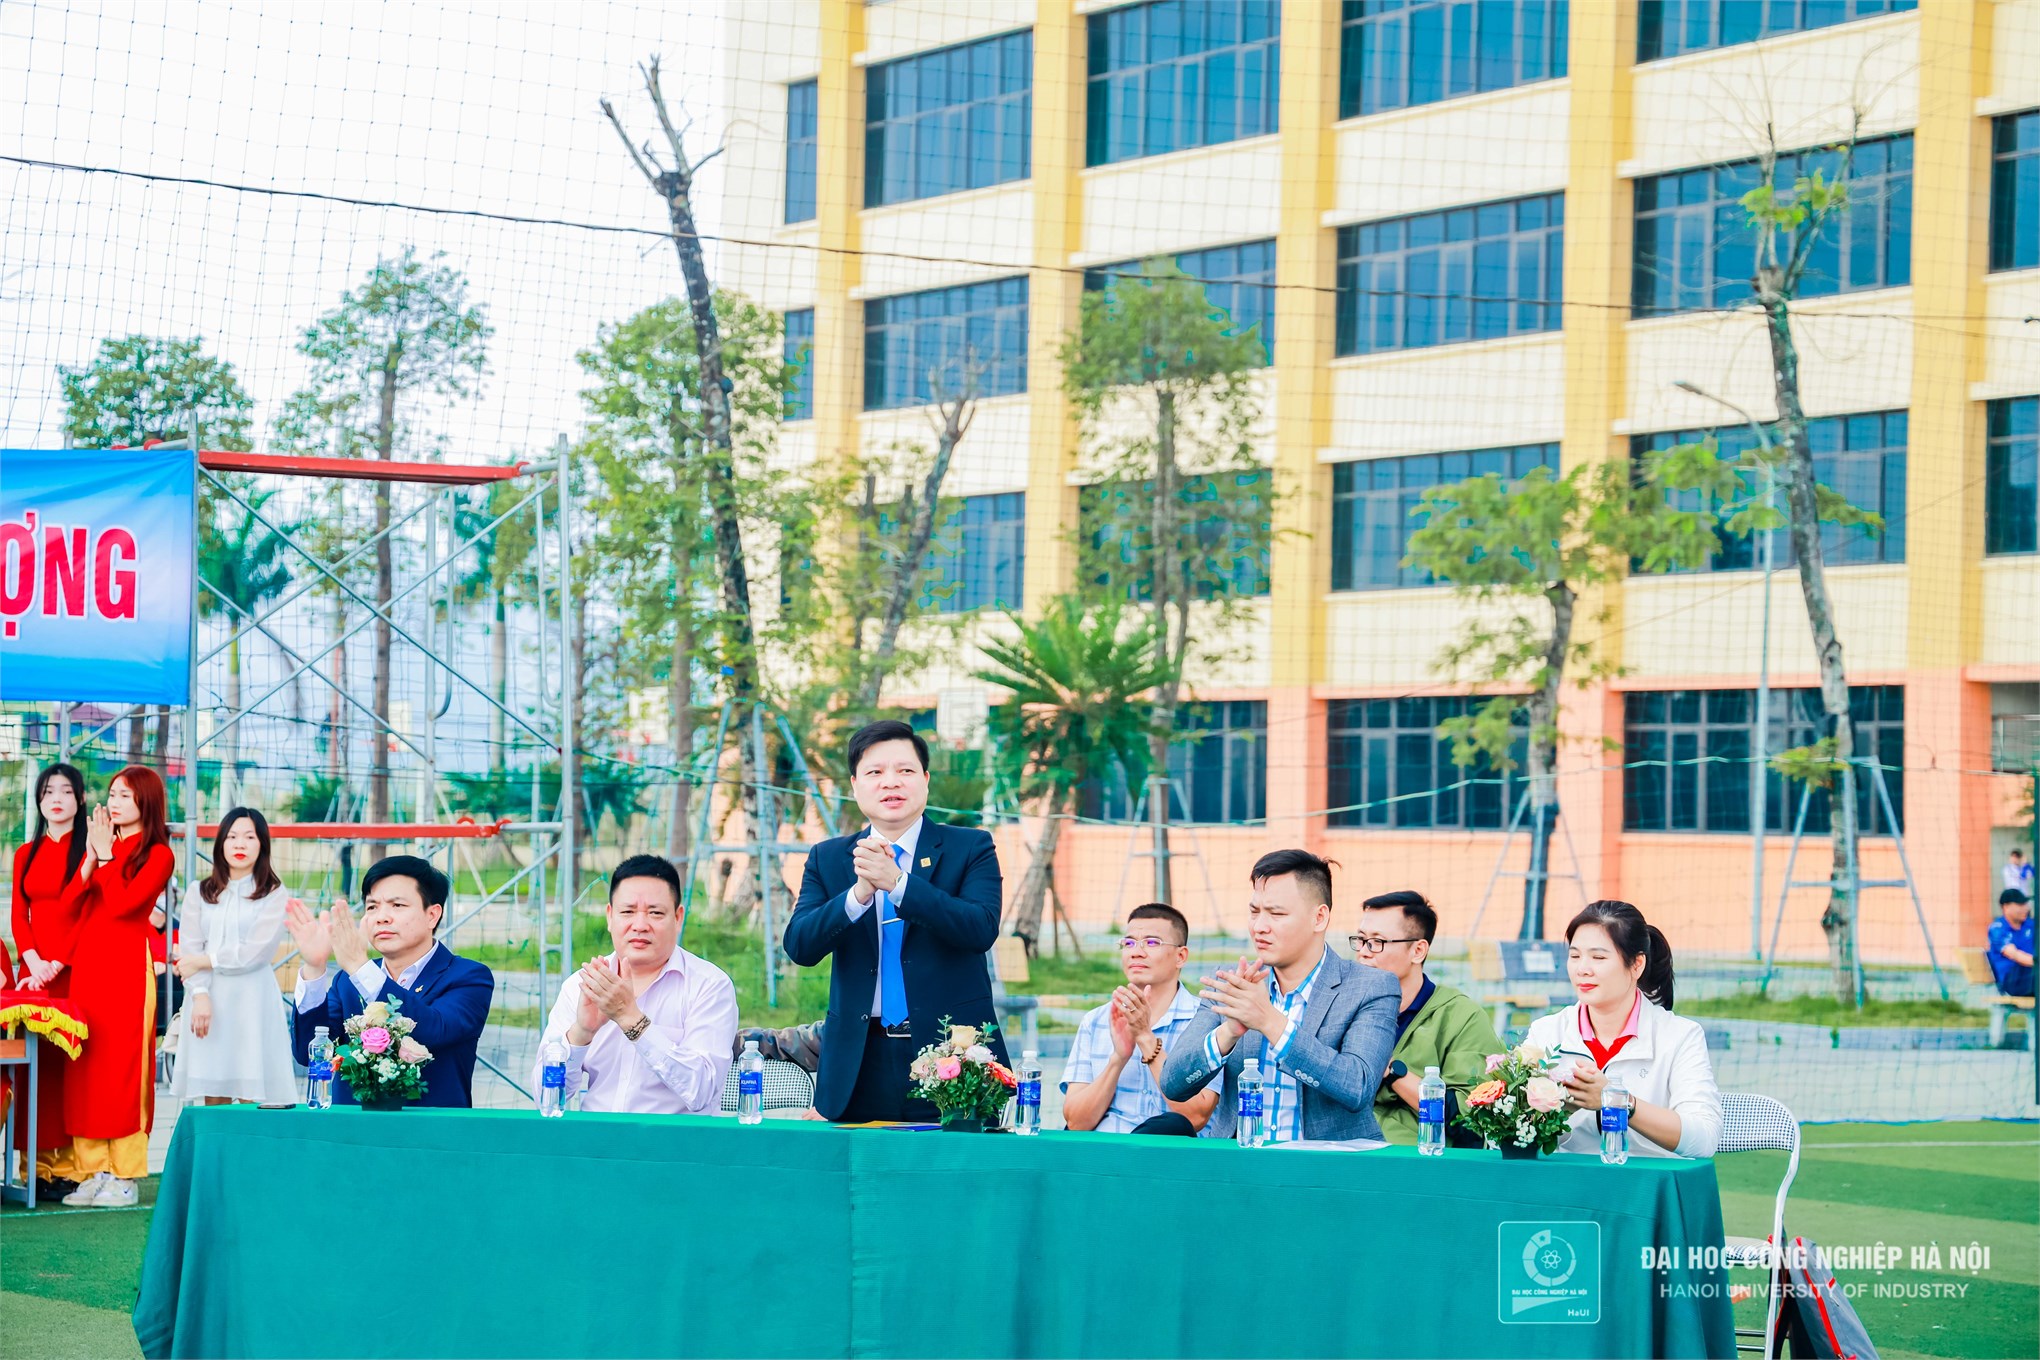 Đại biểu tham dự khai mạc cuộc thi bóng ném sinh viên các trường đại học, học viện, cao đẳng và chuyên nghiệp khu vực Hà Nội